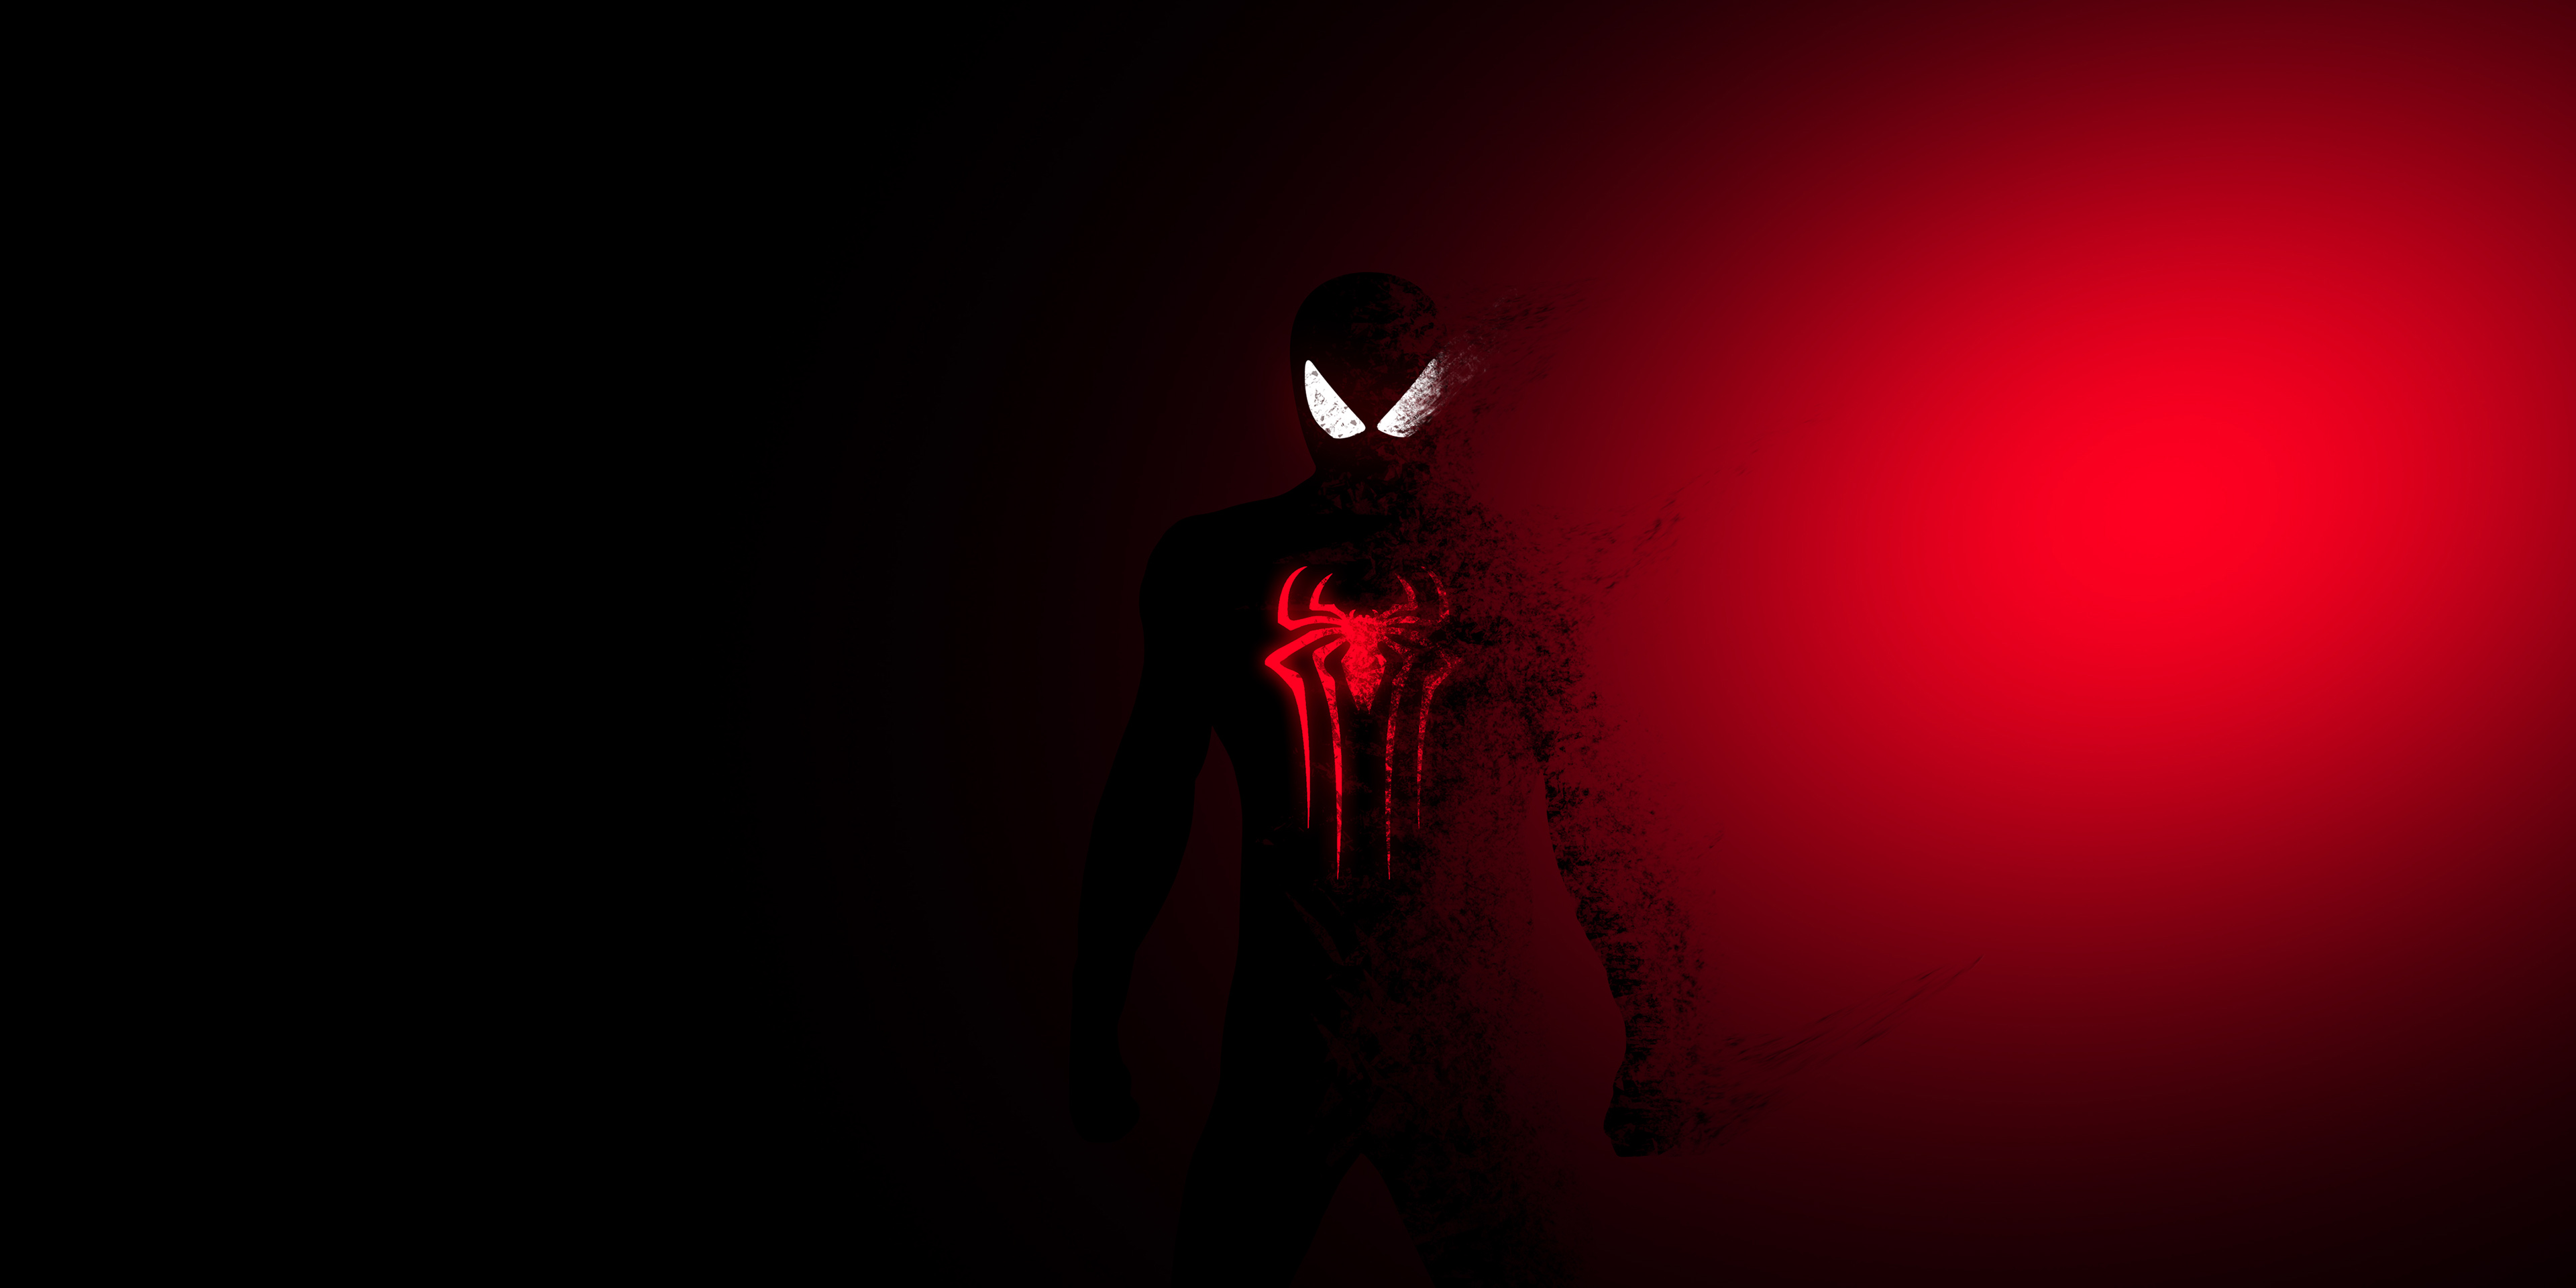 Hình nền Spiderman đỏ cháy 4k sẽ khiến cho trái tim bạn đập nhanh với những hình ảnh độc đáo và bắt mắt. HD Artist và những hình nền 4k đầy màu sắc khác cũng sẵn sàng để bạn tải về. Hãy khám phá ngay để tìm kiếm những hình ảnh độc đáo cho màn hình của mình.